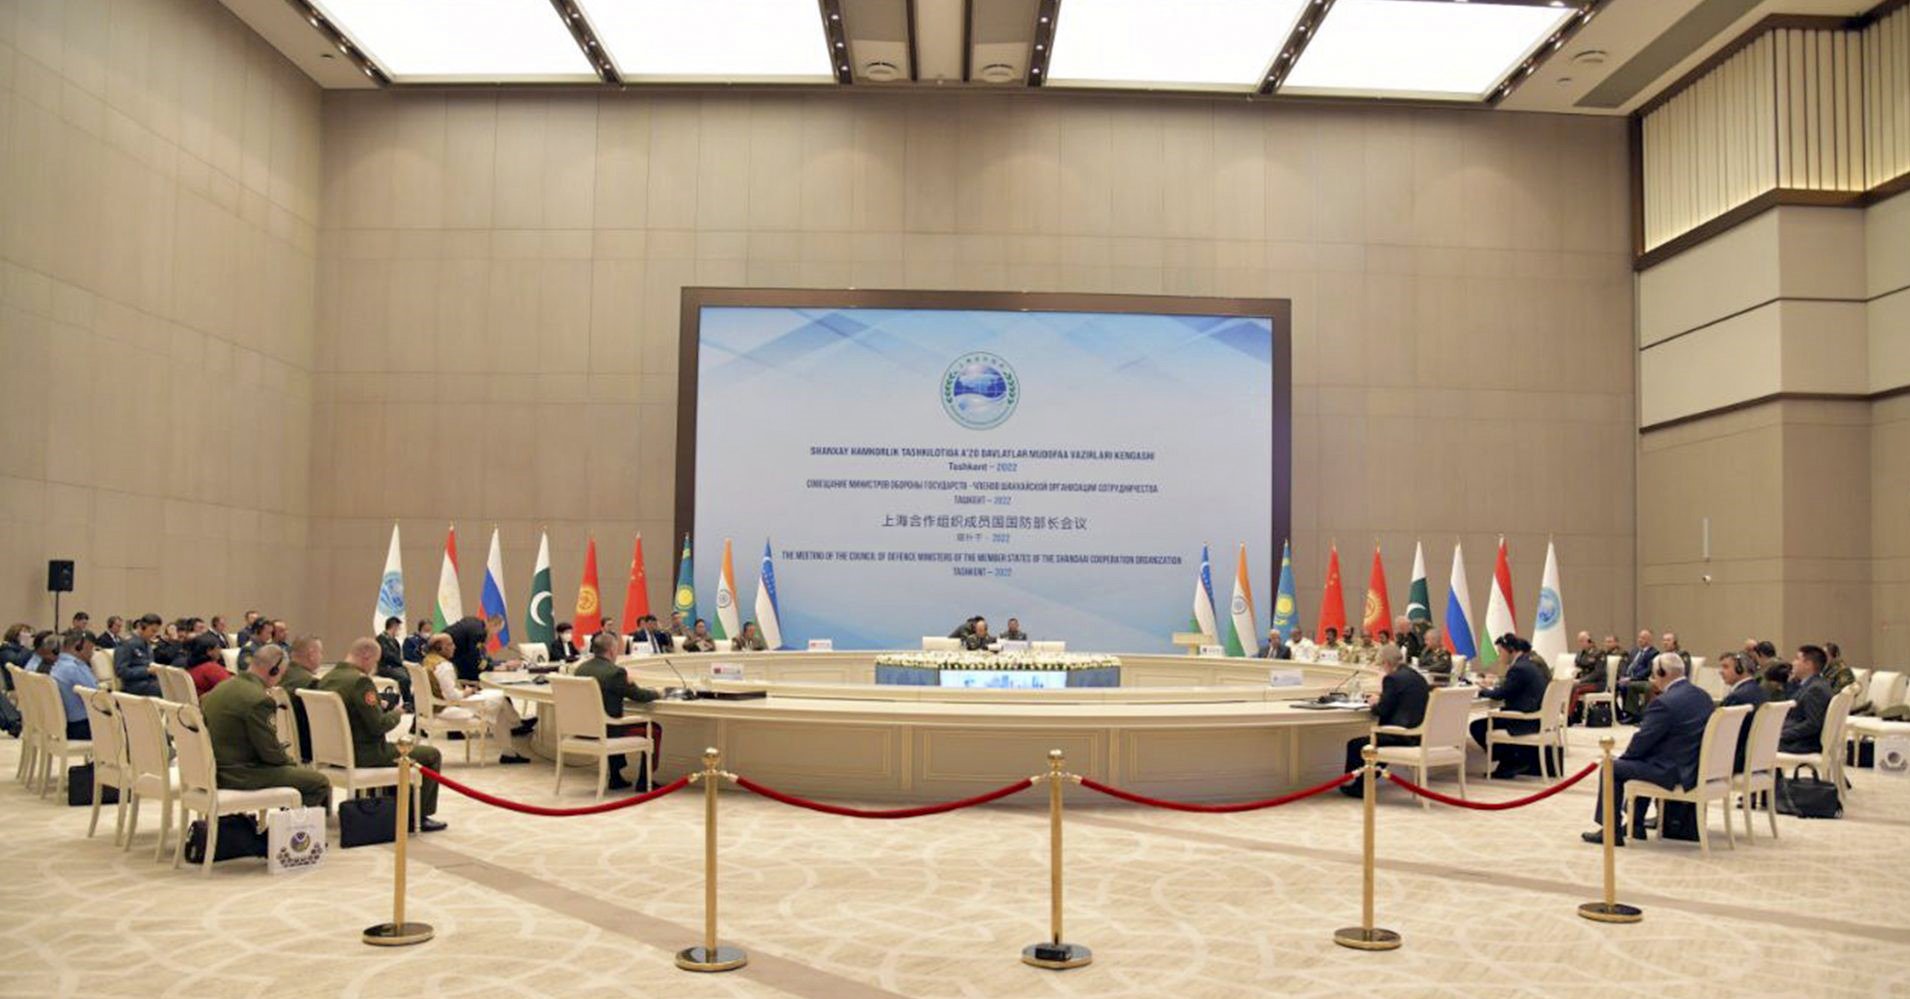 Өзбекстанда ШКУга мүчө мамлекеттердин коргоо министрлеринин кеңешмеси өттү